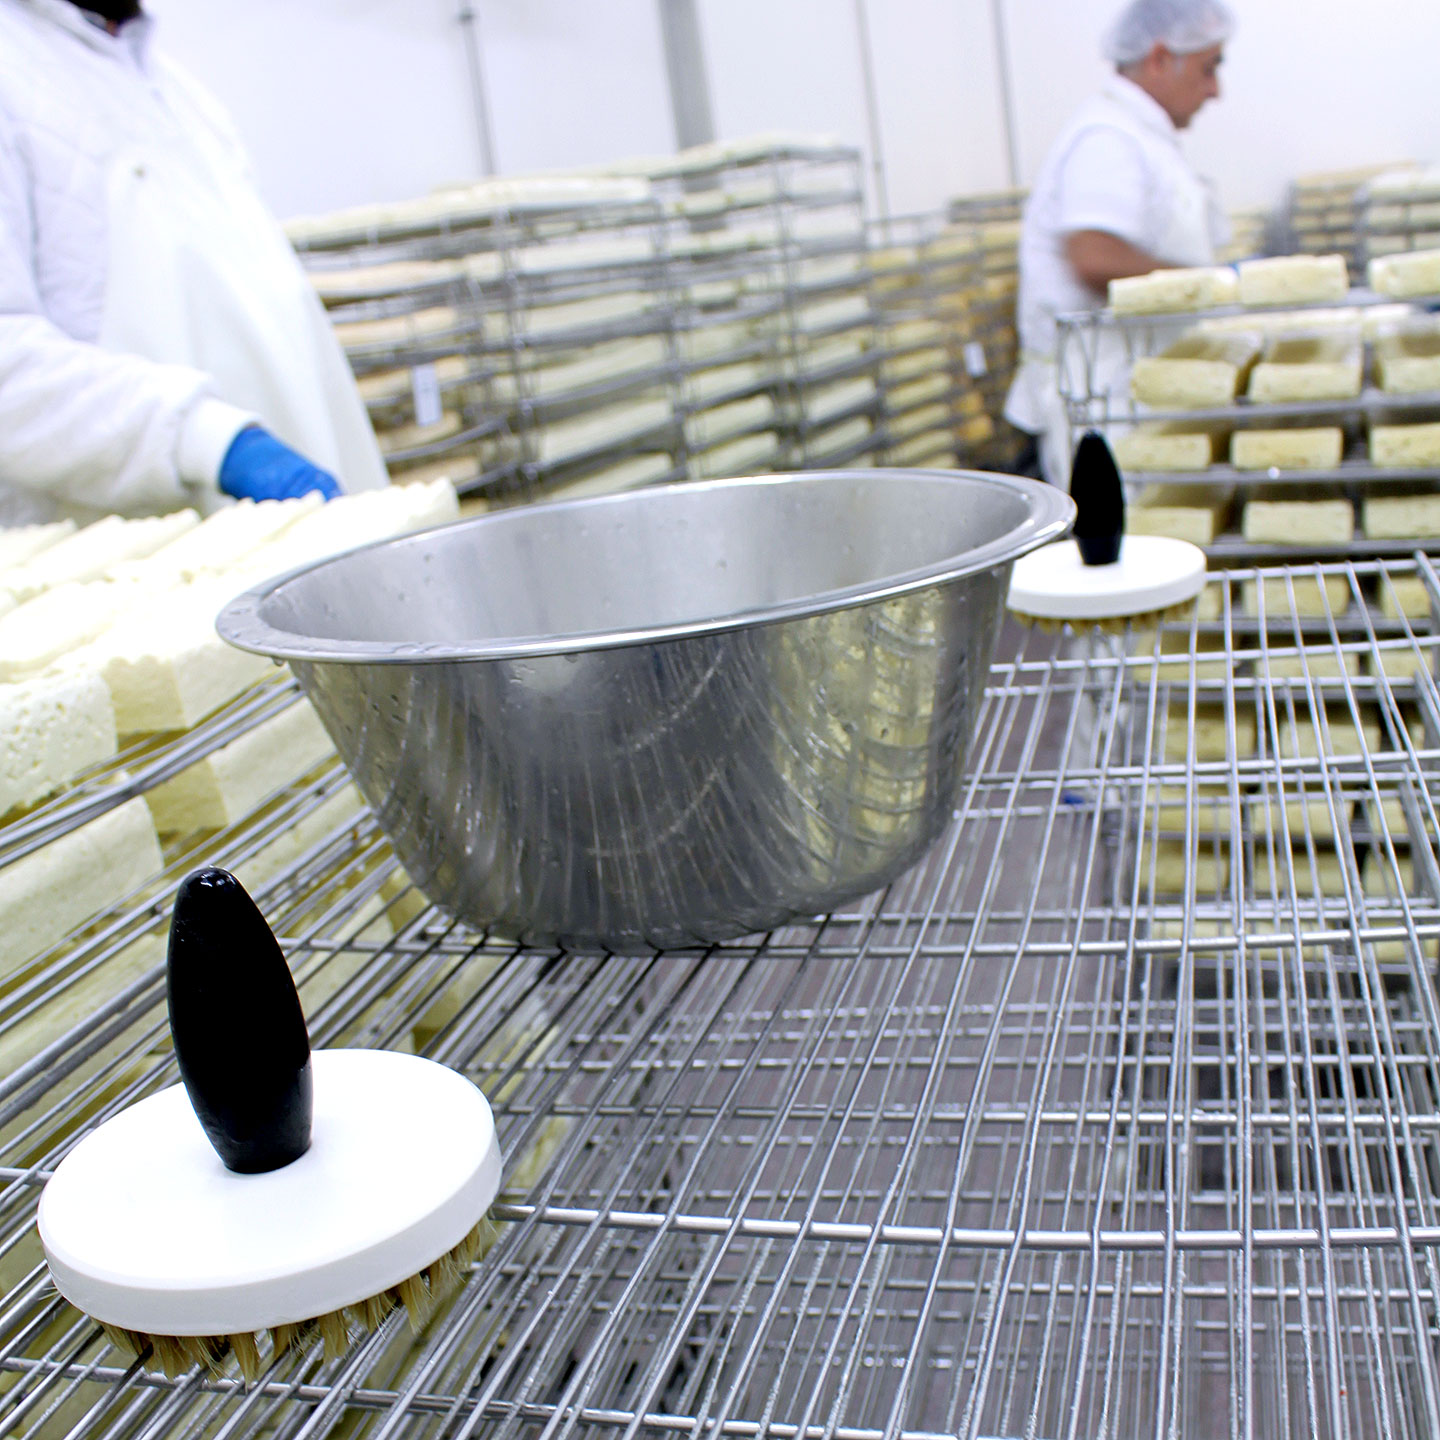 Käseproduktion: Hygienische UV / UVC Desinfektion in Käsereien und Käsekellern gegen Bakteriophagen